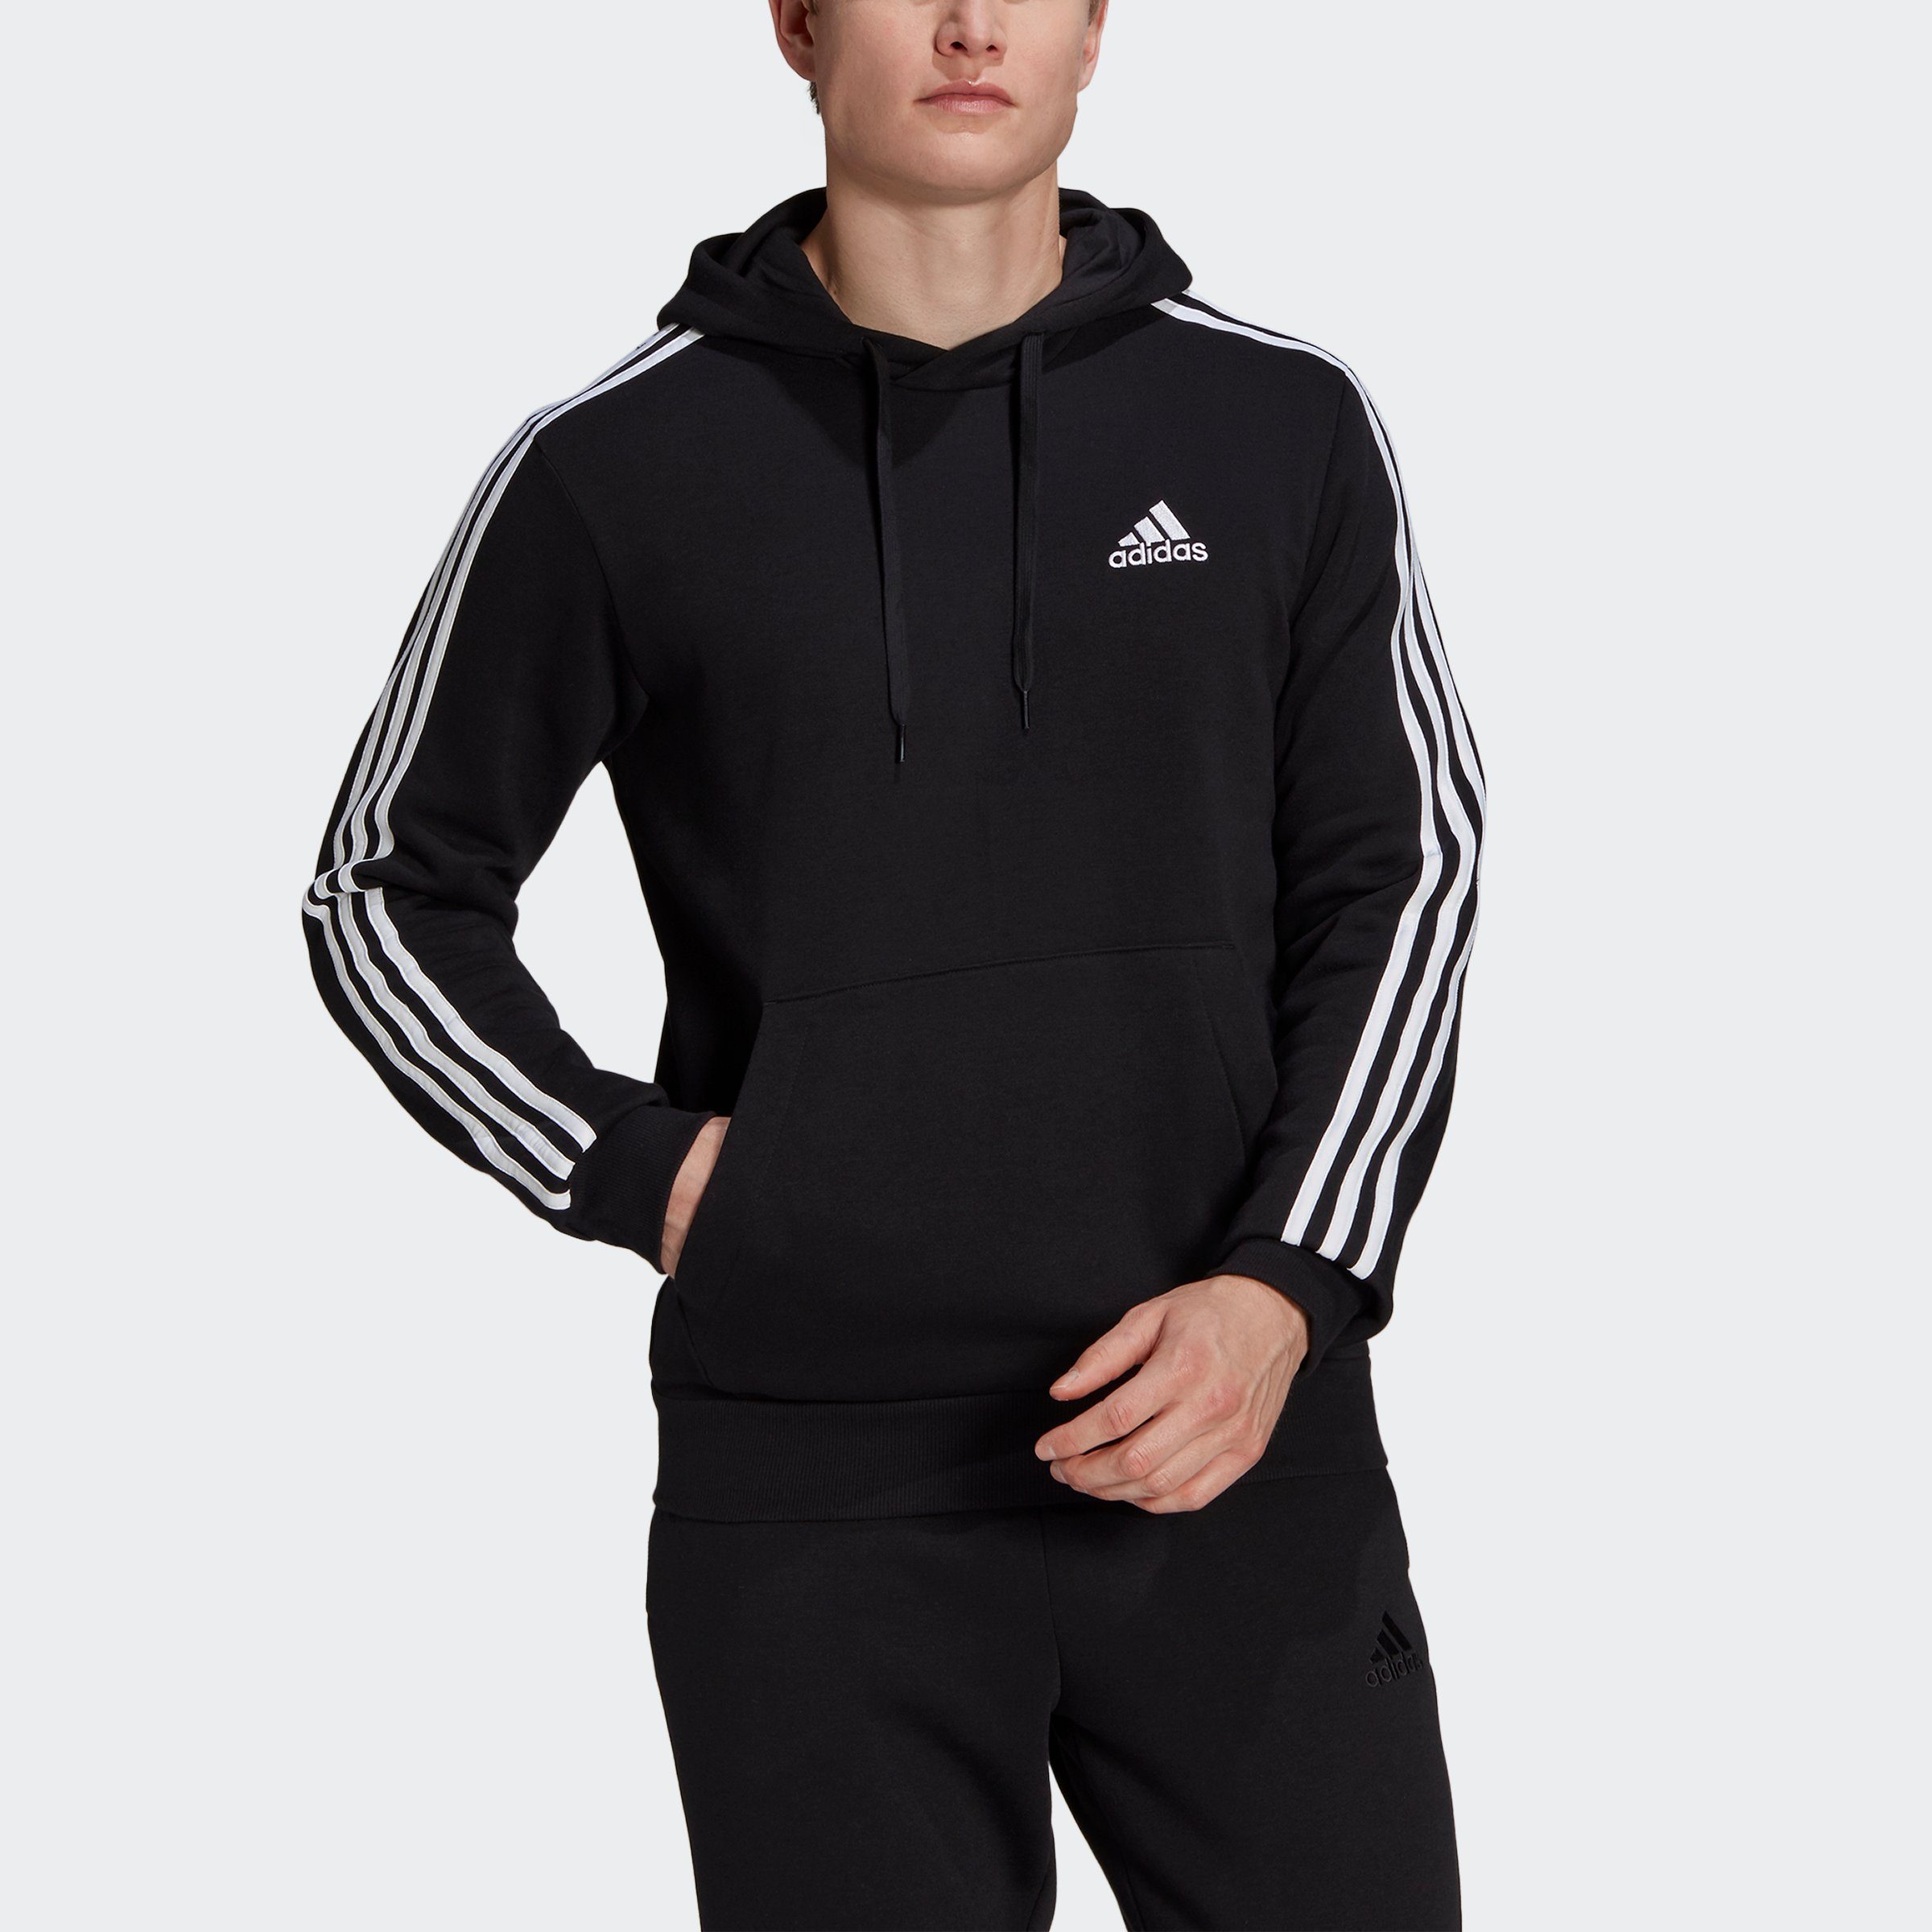 3STREIFEN / Sweatshirt ESSENTIALS FLEECE White adidas Black HOODIE Sportswear